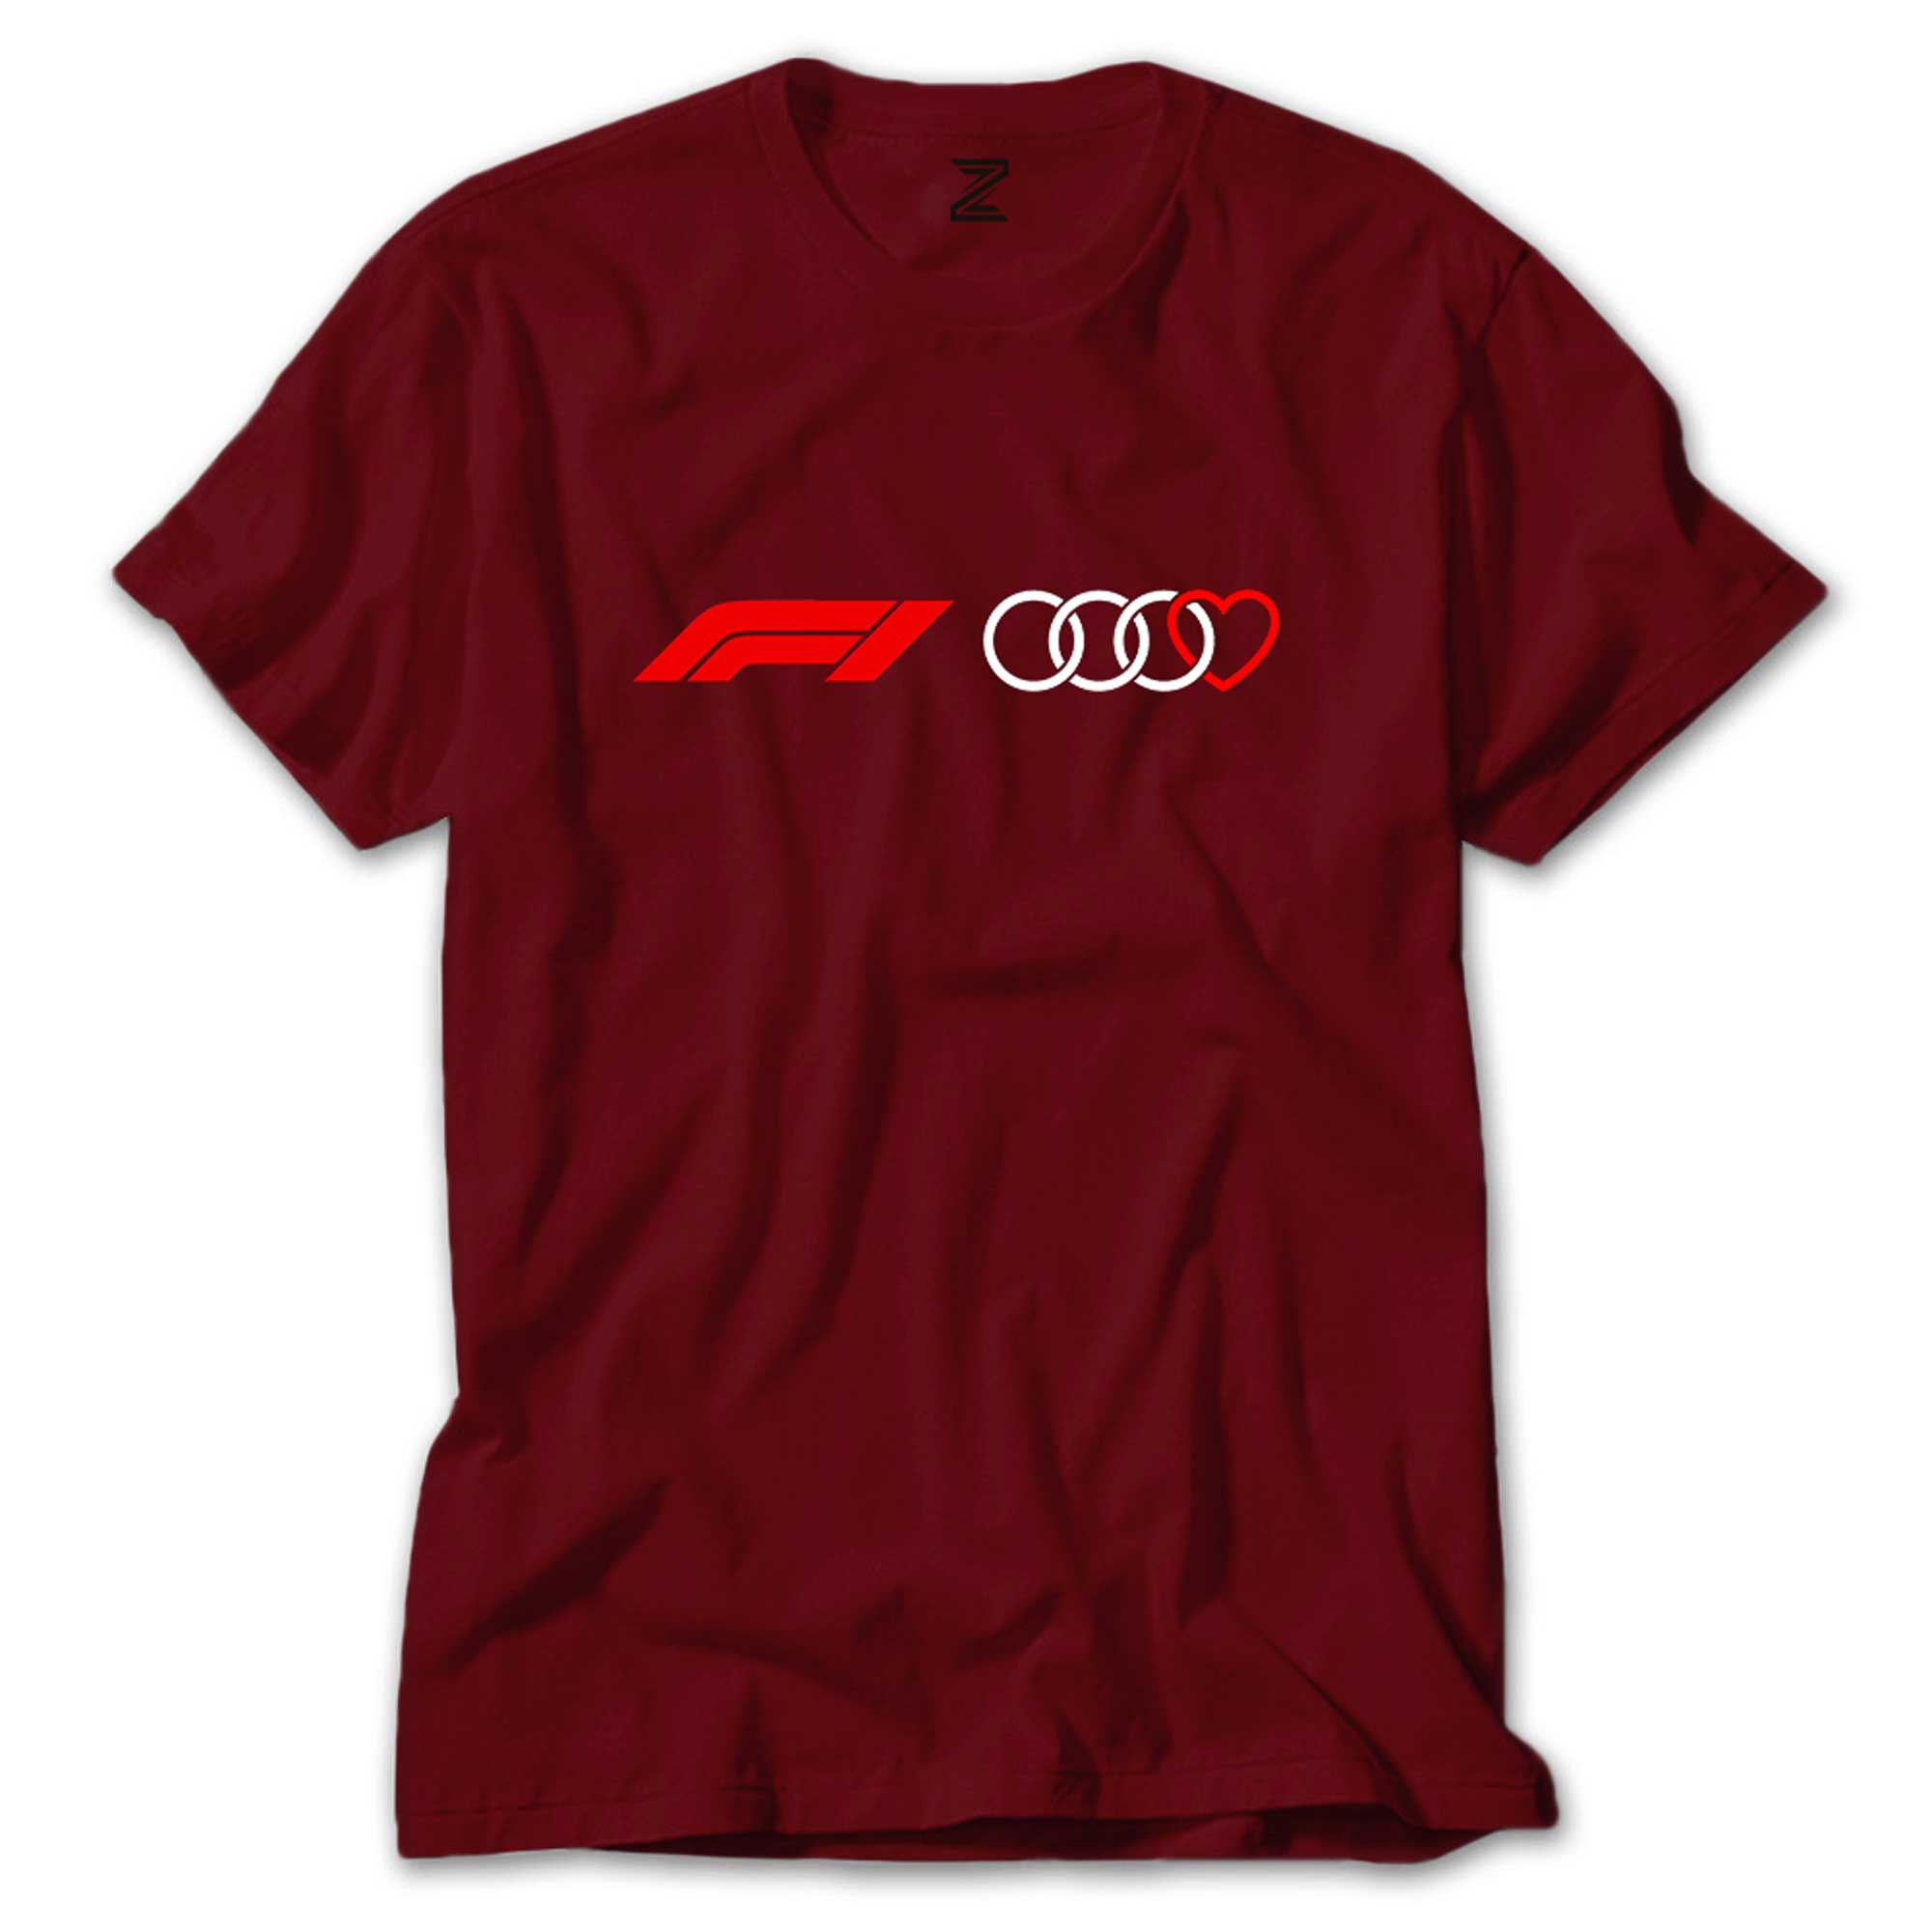 İndirimli F1 Audi Love Kırmızı Tişört